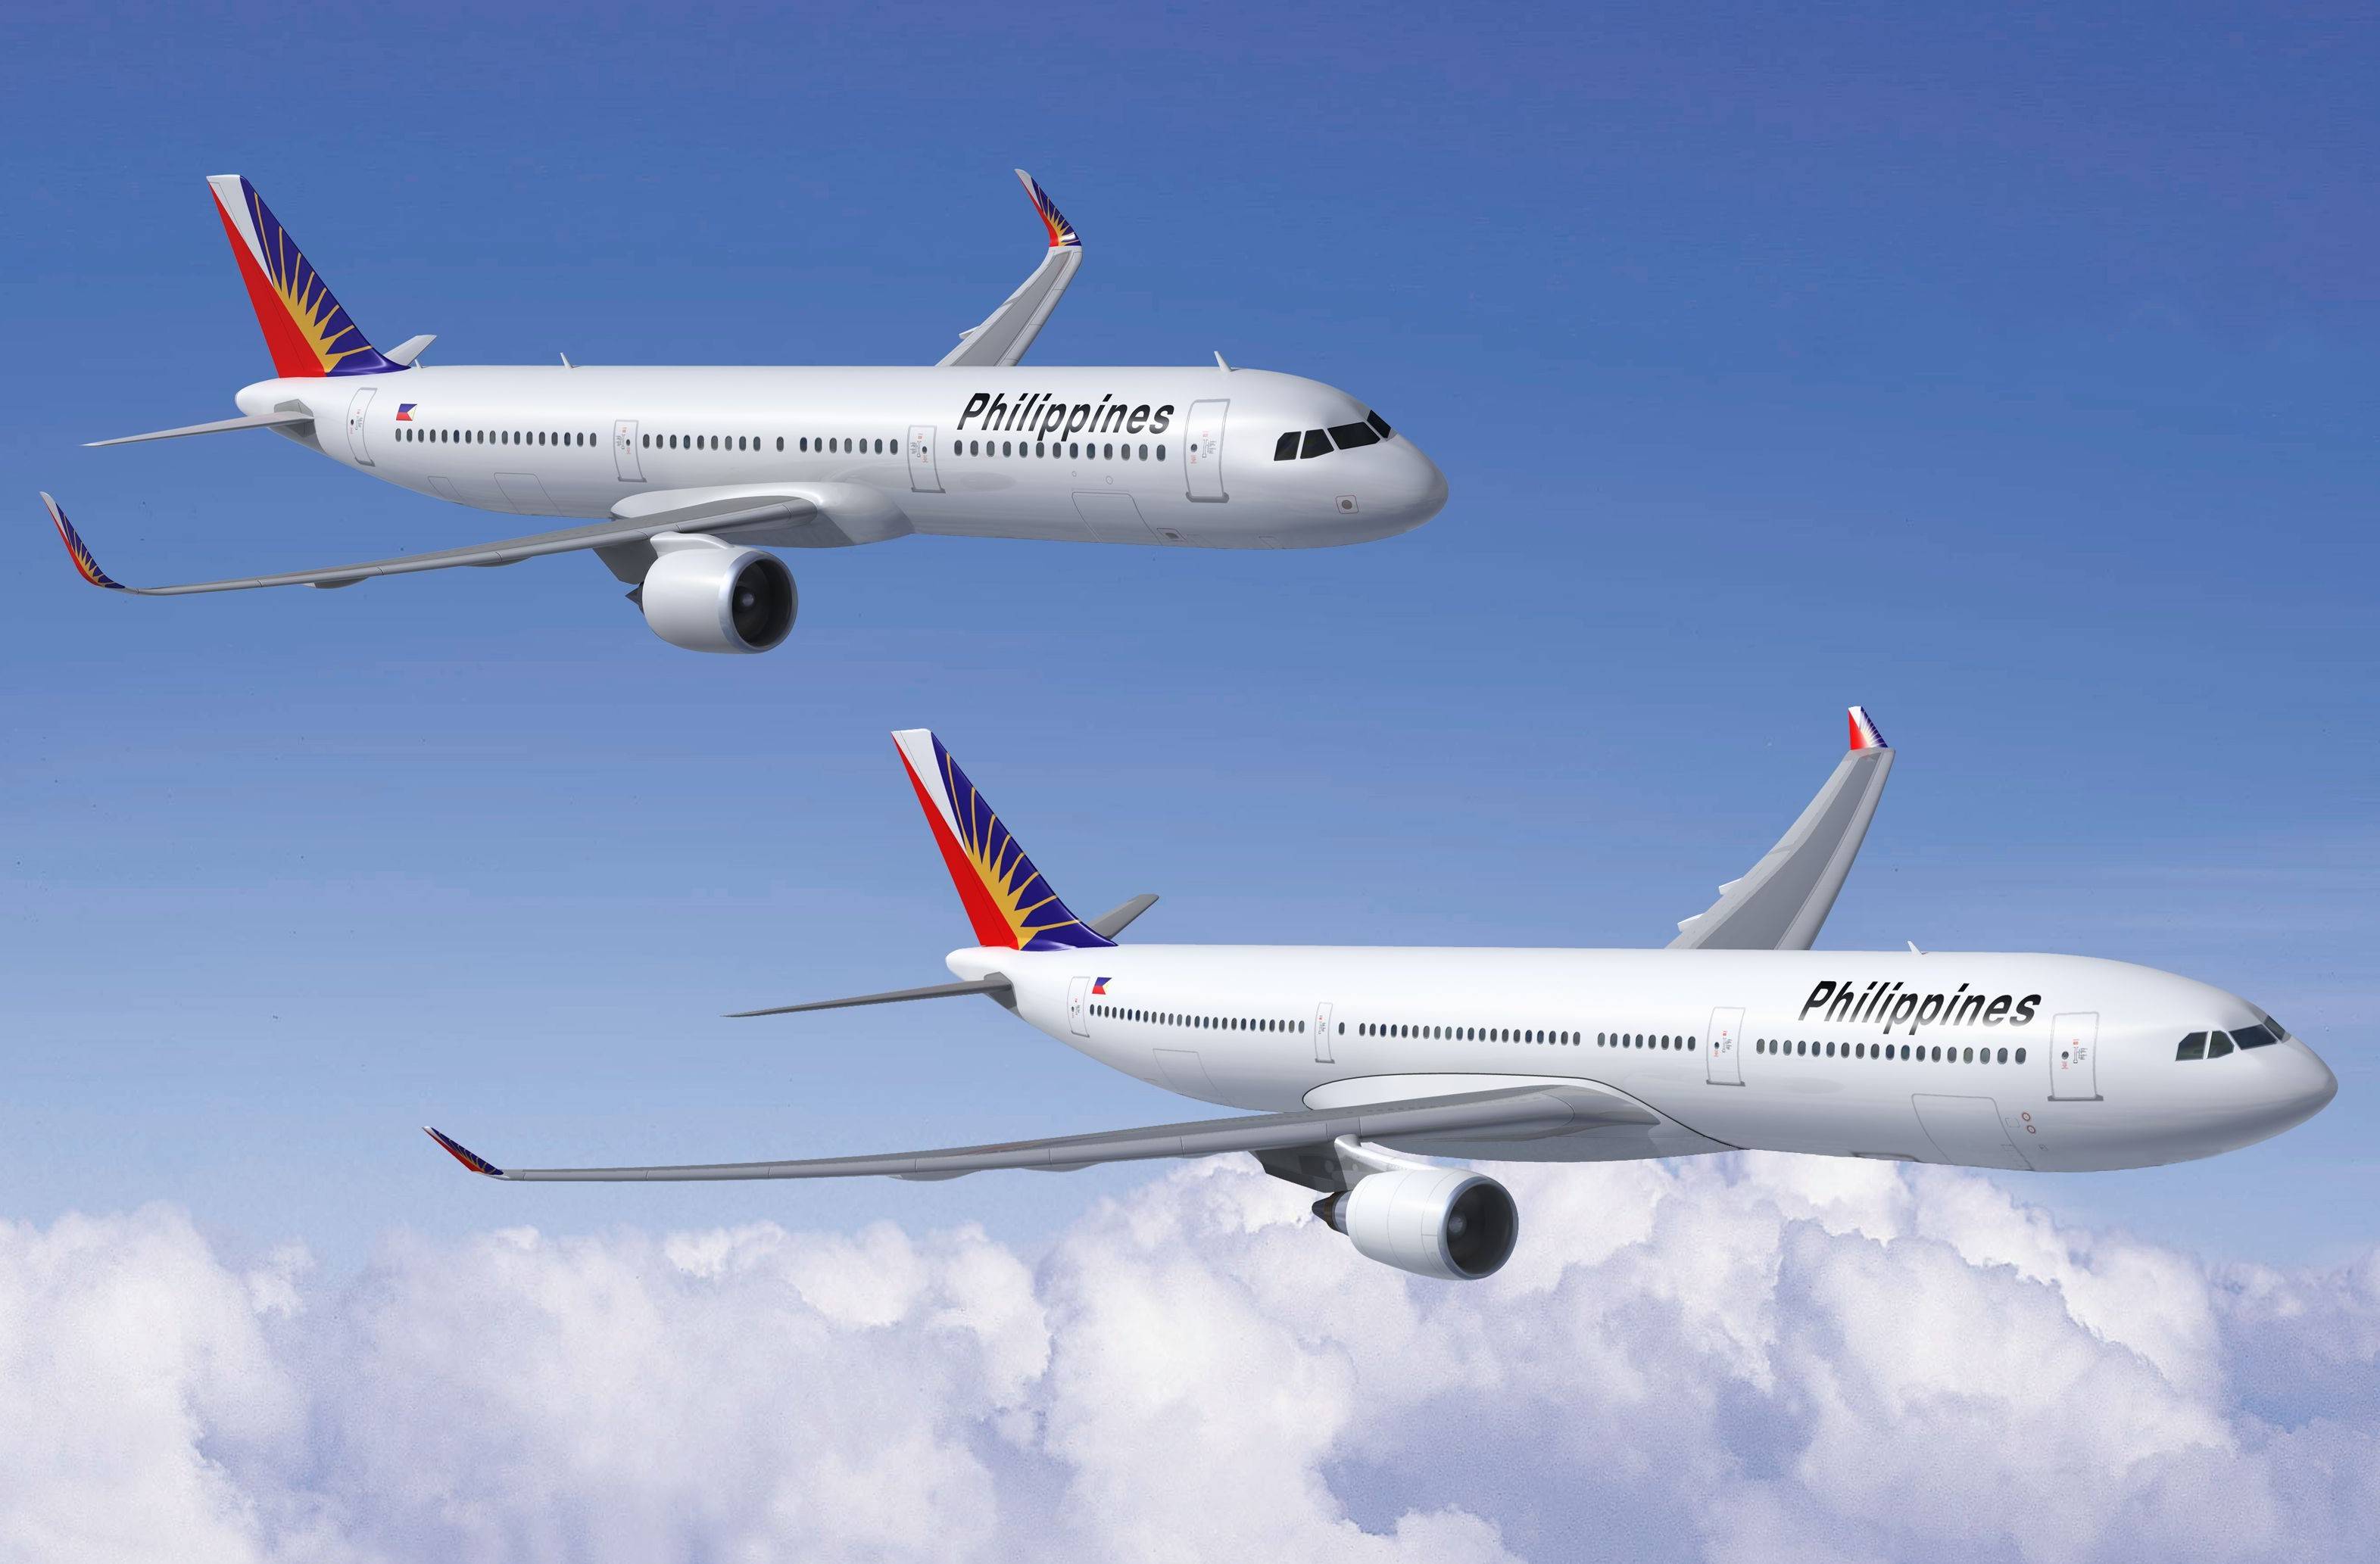 Philippine airlines (филиппин эйрлайнс): обзор авиакомпании филиппинских авиалиний, направления перелетов, отзывы и цены